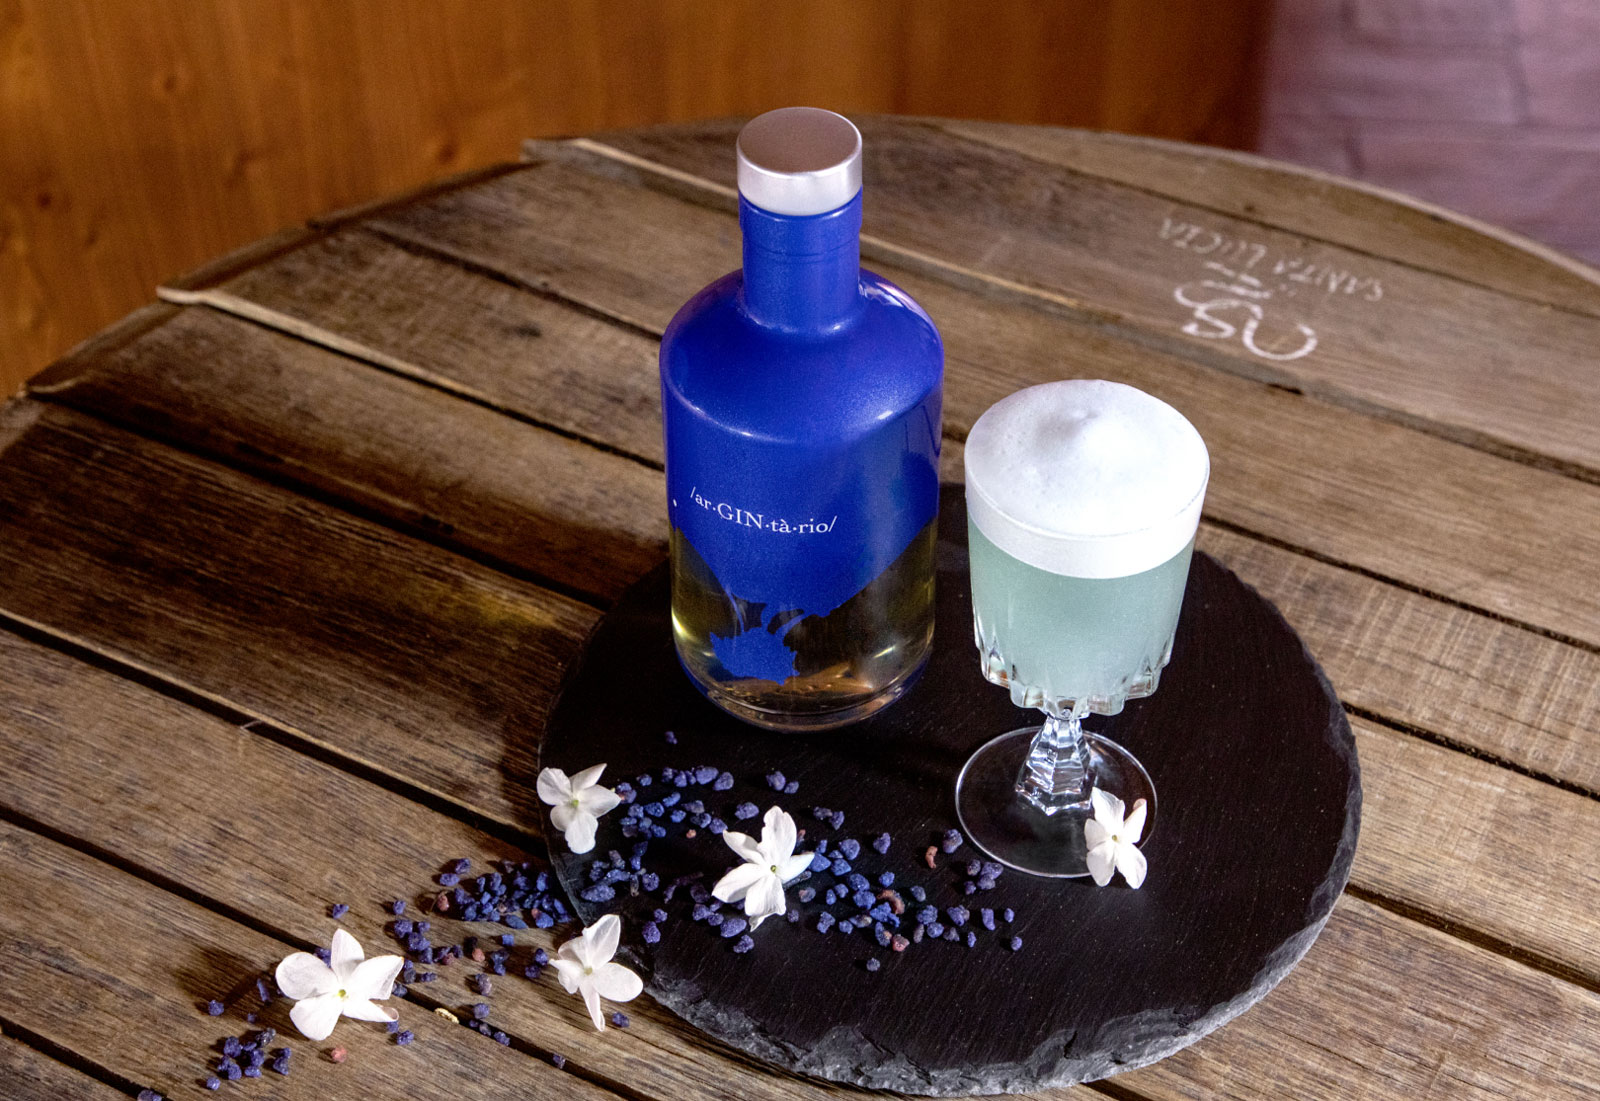 composizione con bottiglia Argintario, cocktail realizzato con il gin, disposti su un vassoio